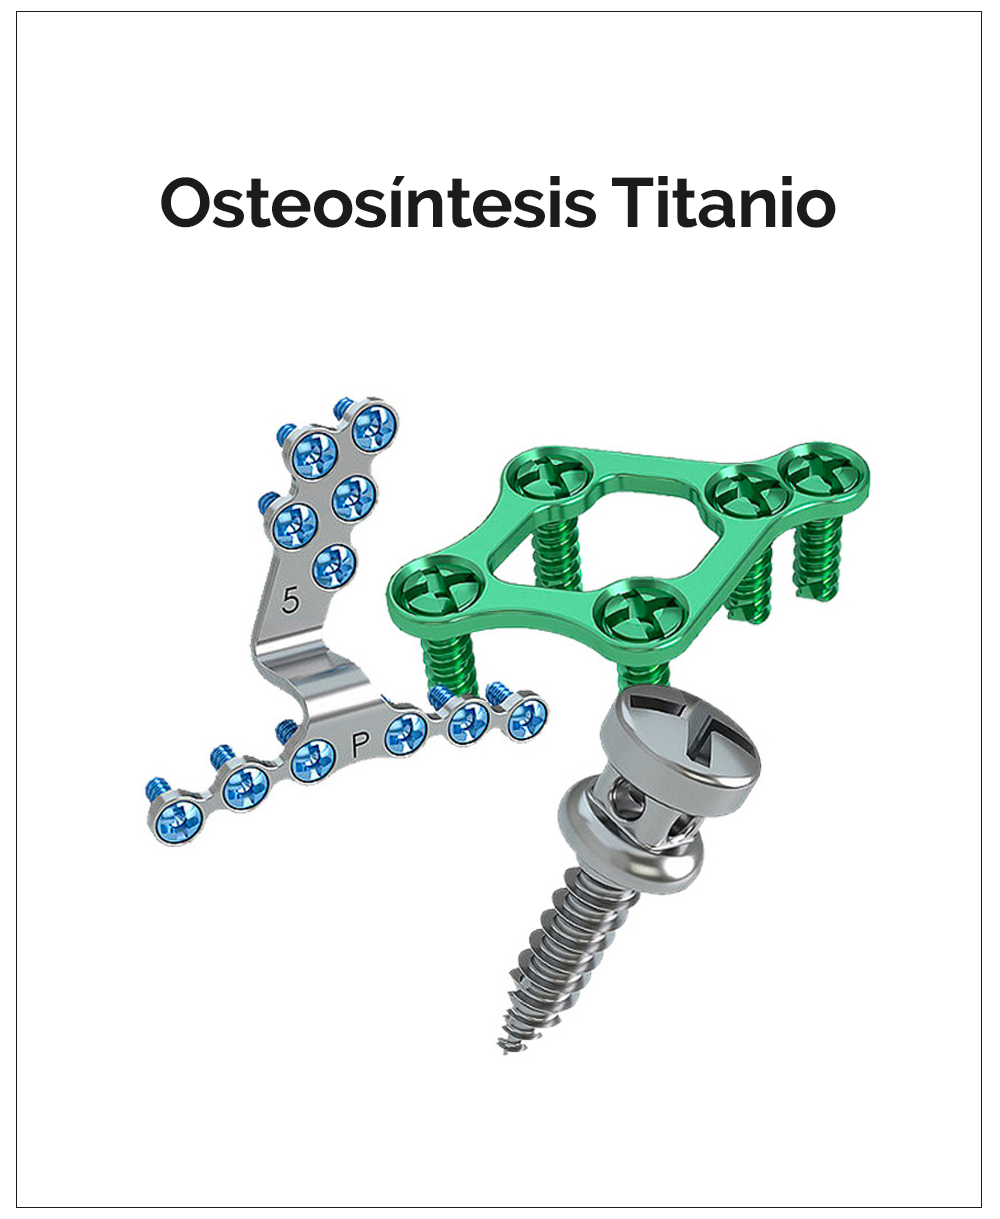 Osteosíntesis Titanio